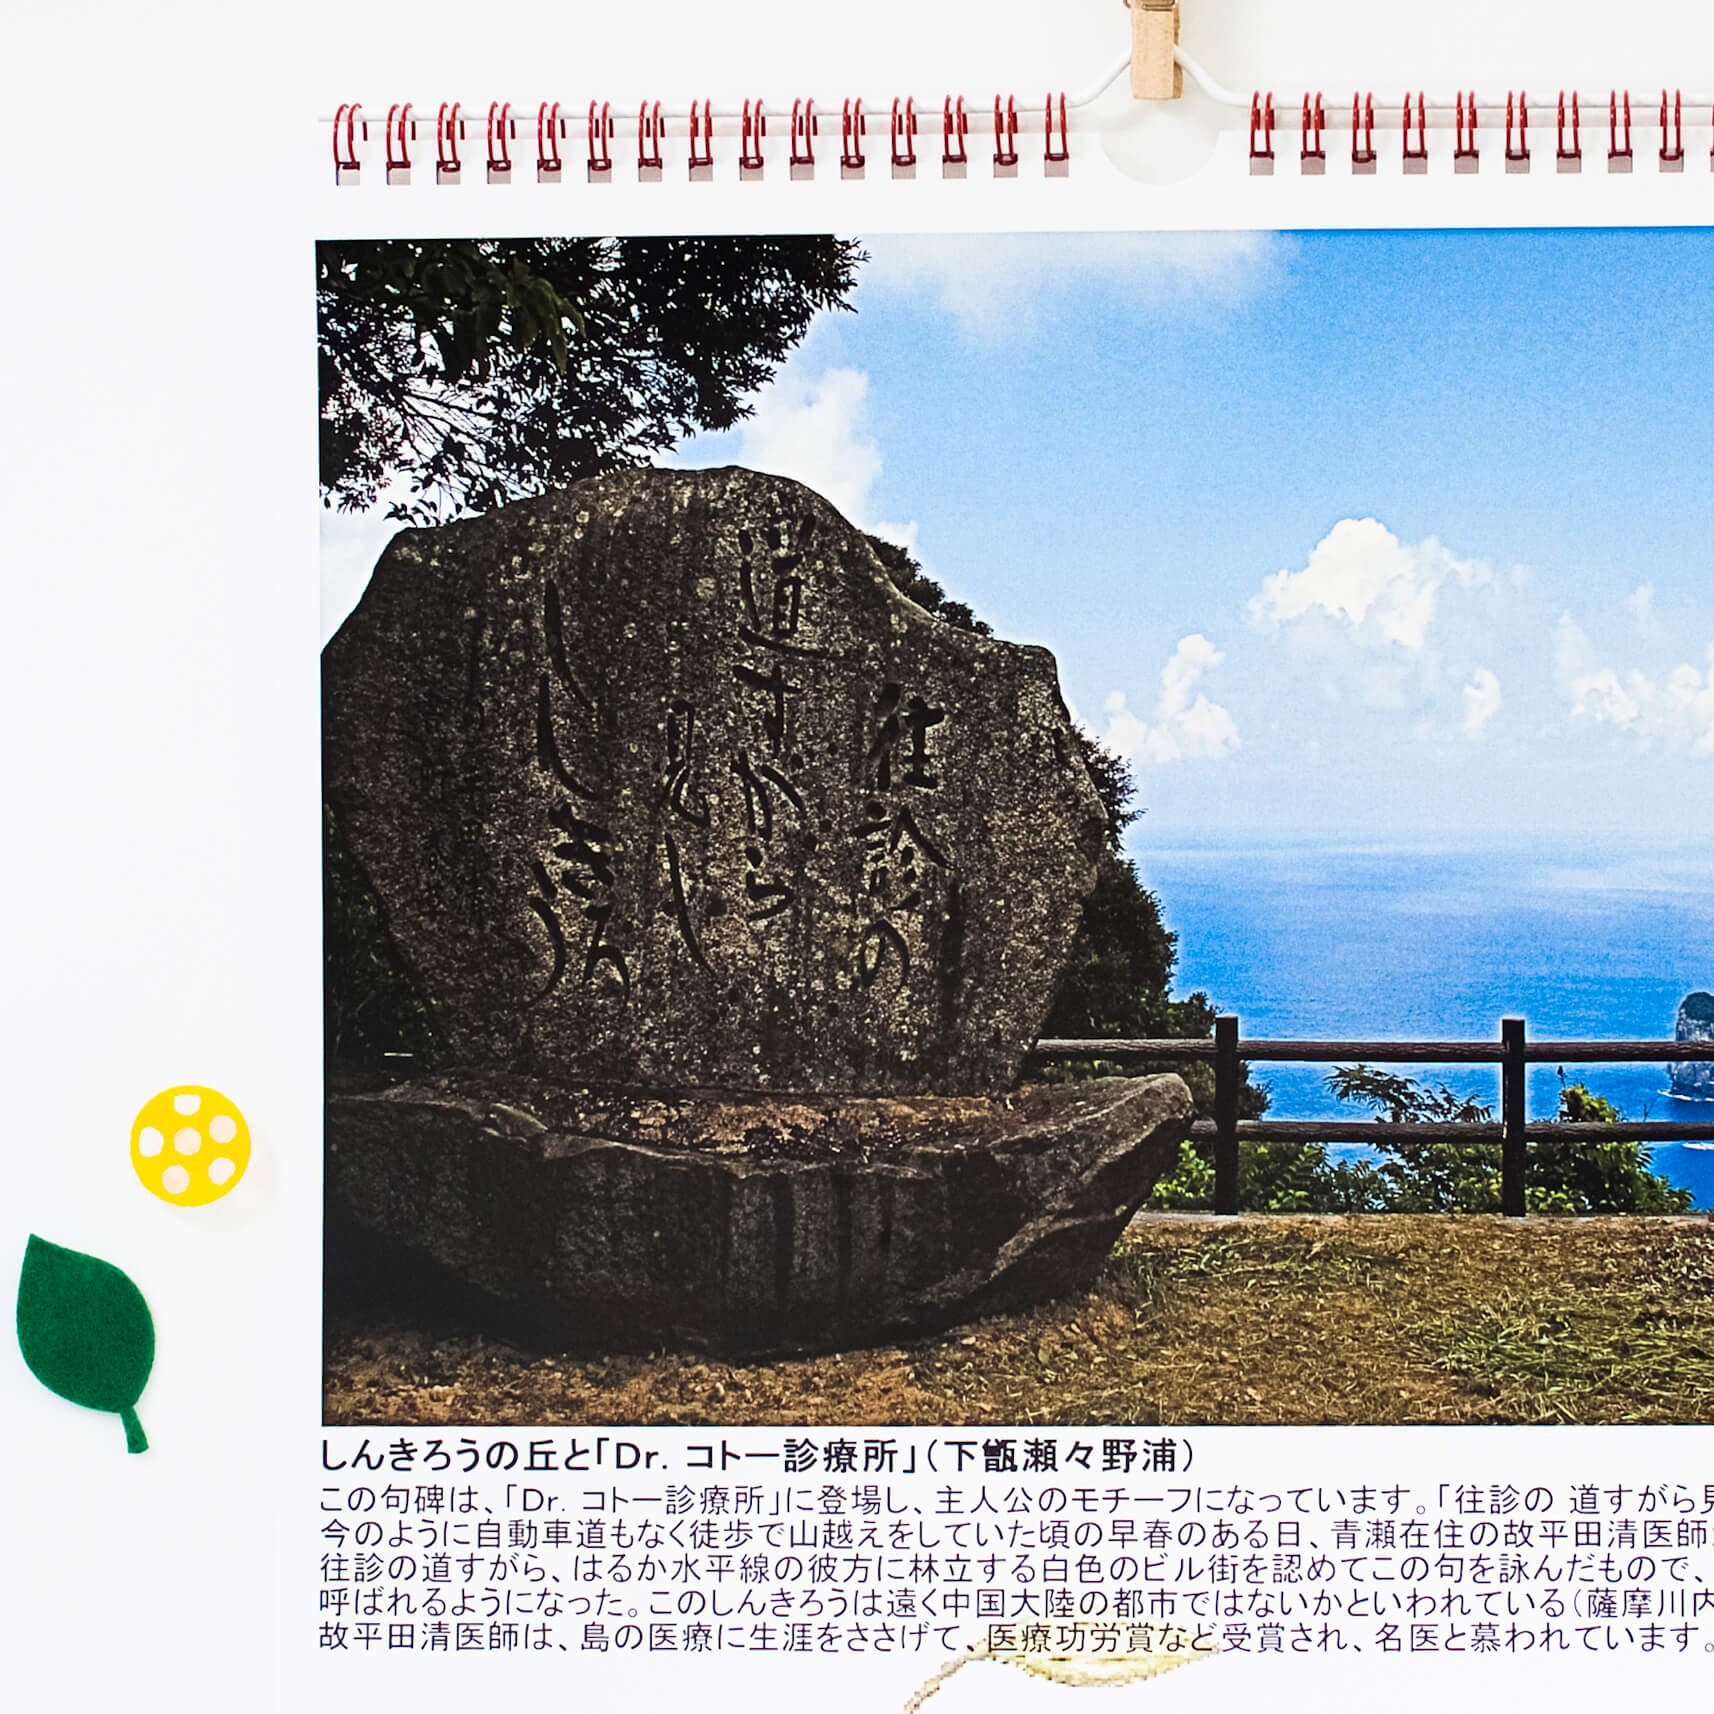 「後藤　和夫 様」製作のオリジナルカレンダー ギャラリー写真2